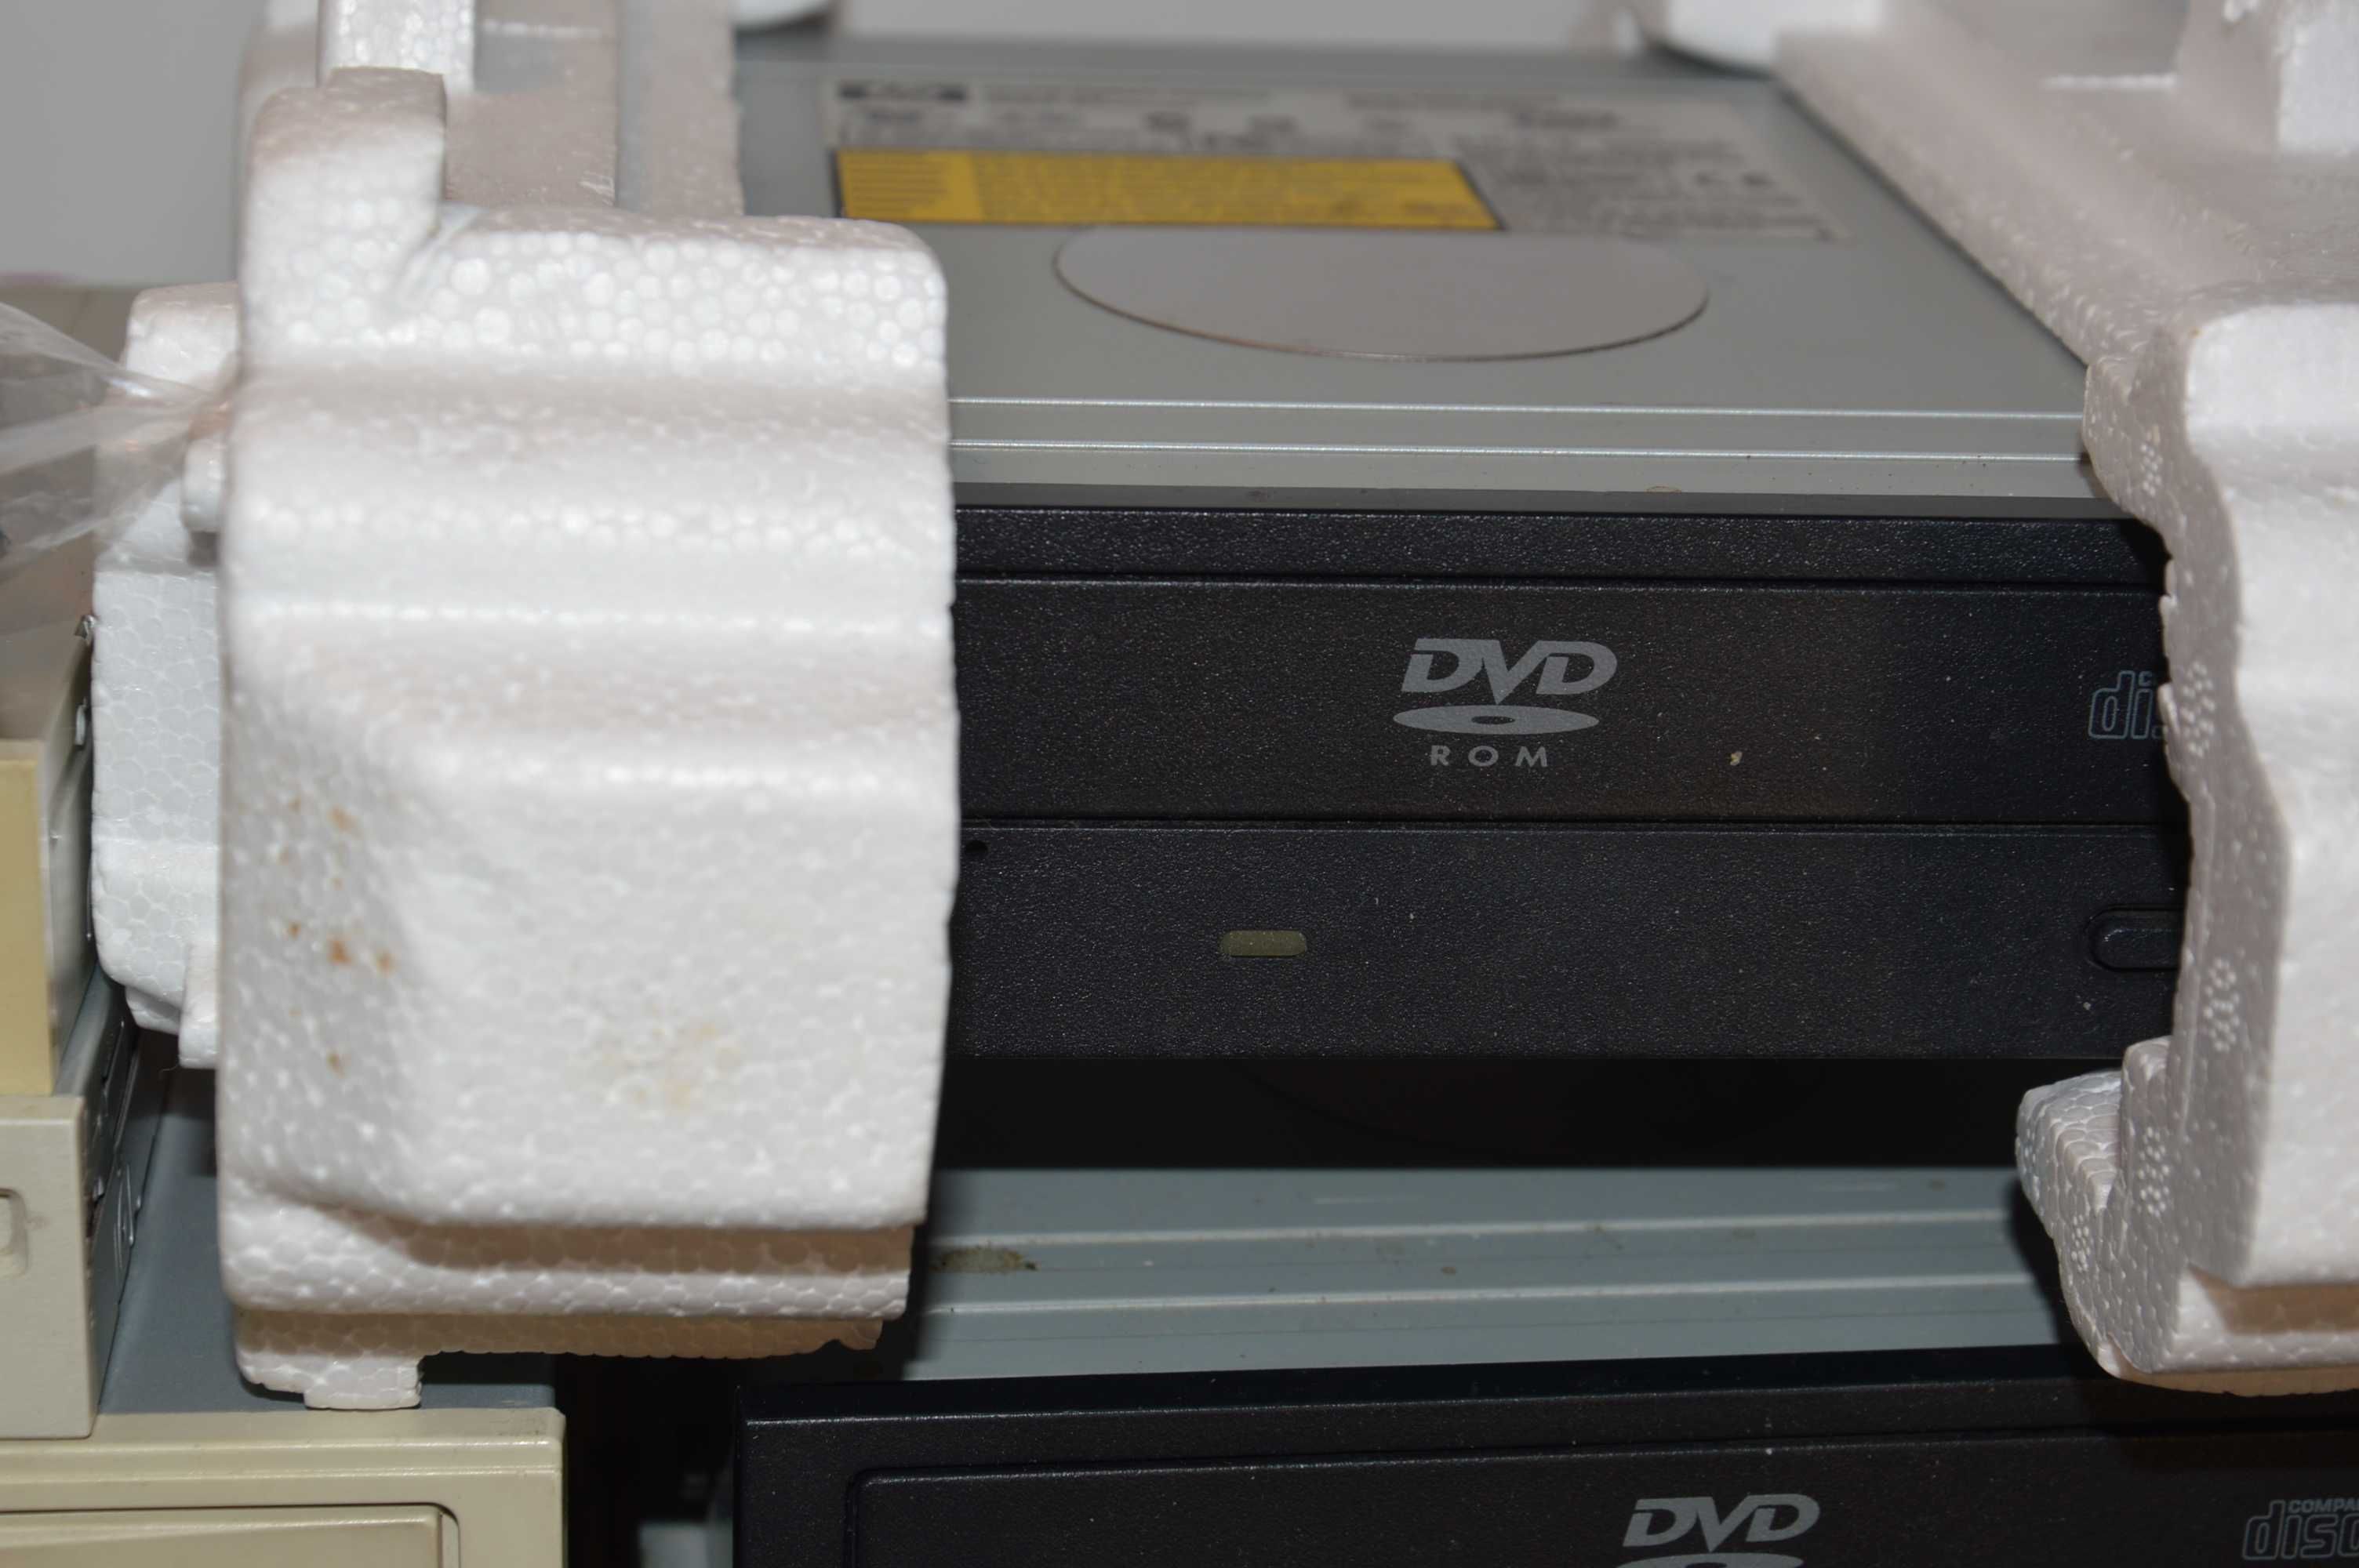 Zestaw  CD ROMY DVD  stacje FDD dyskietek taśmy konektory.